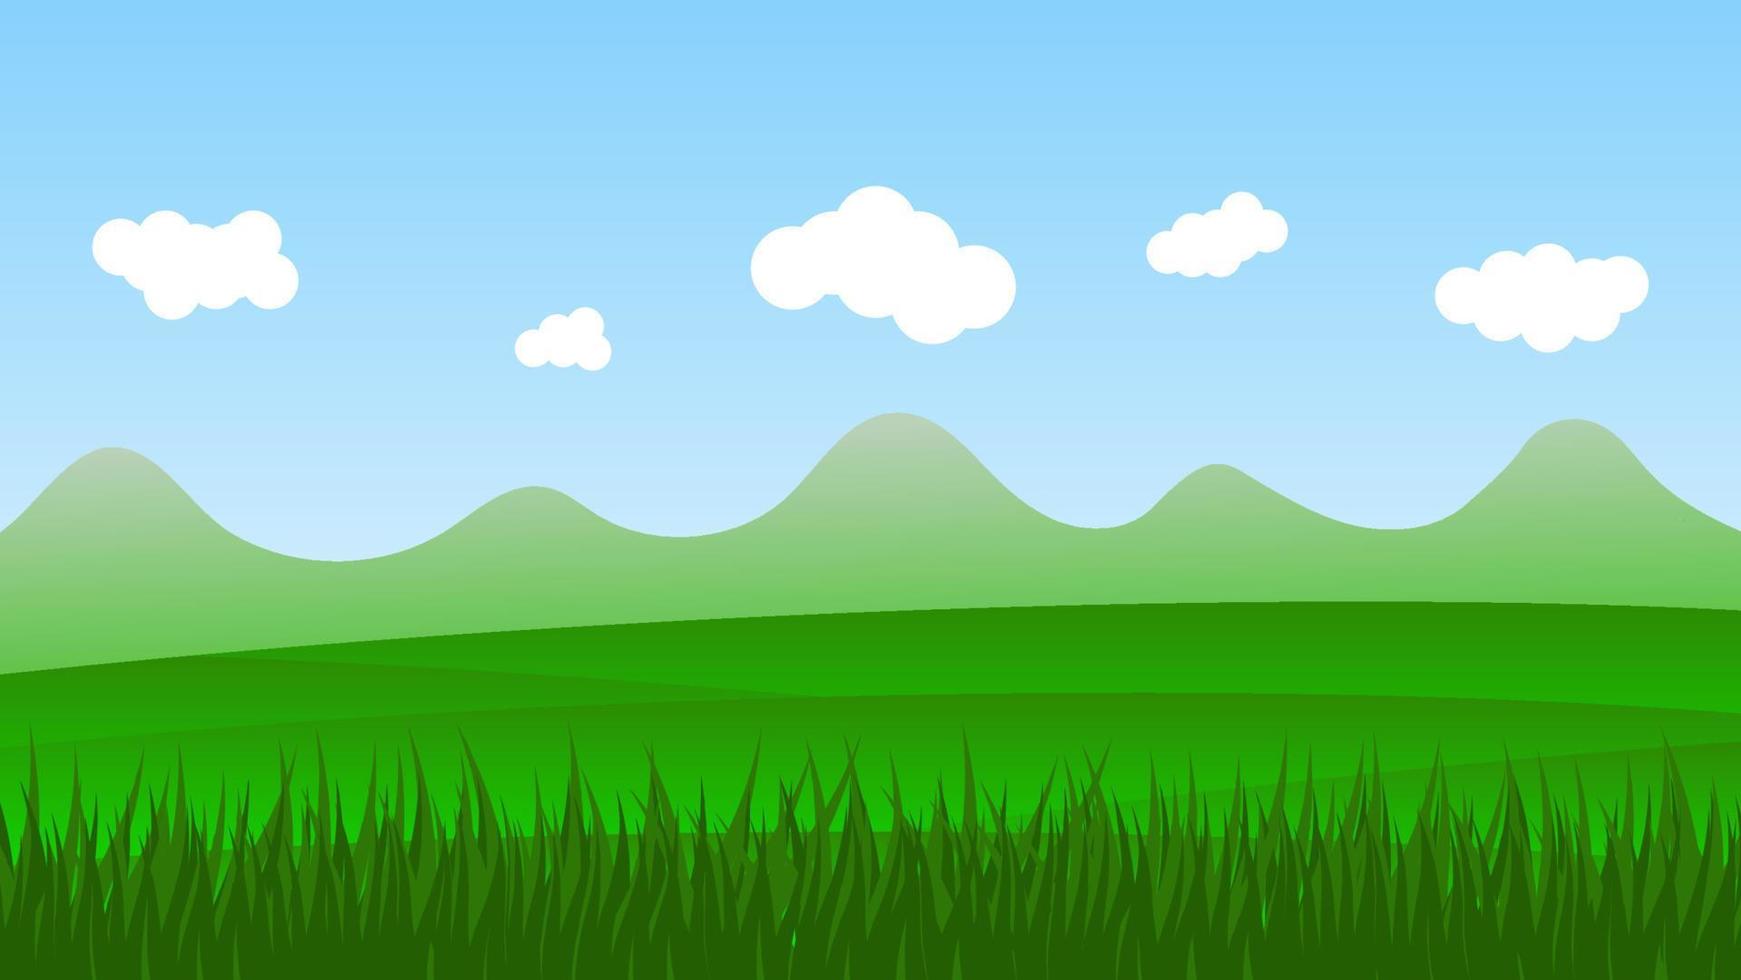 cena dos desenhos animados da paisagem com campo verde e nuvem branca no fundo do céu azul de verão vetor